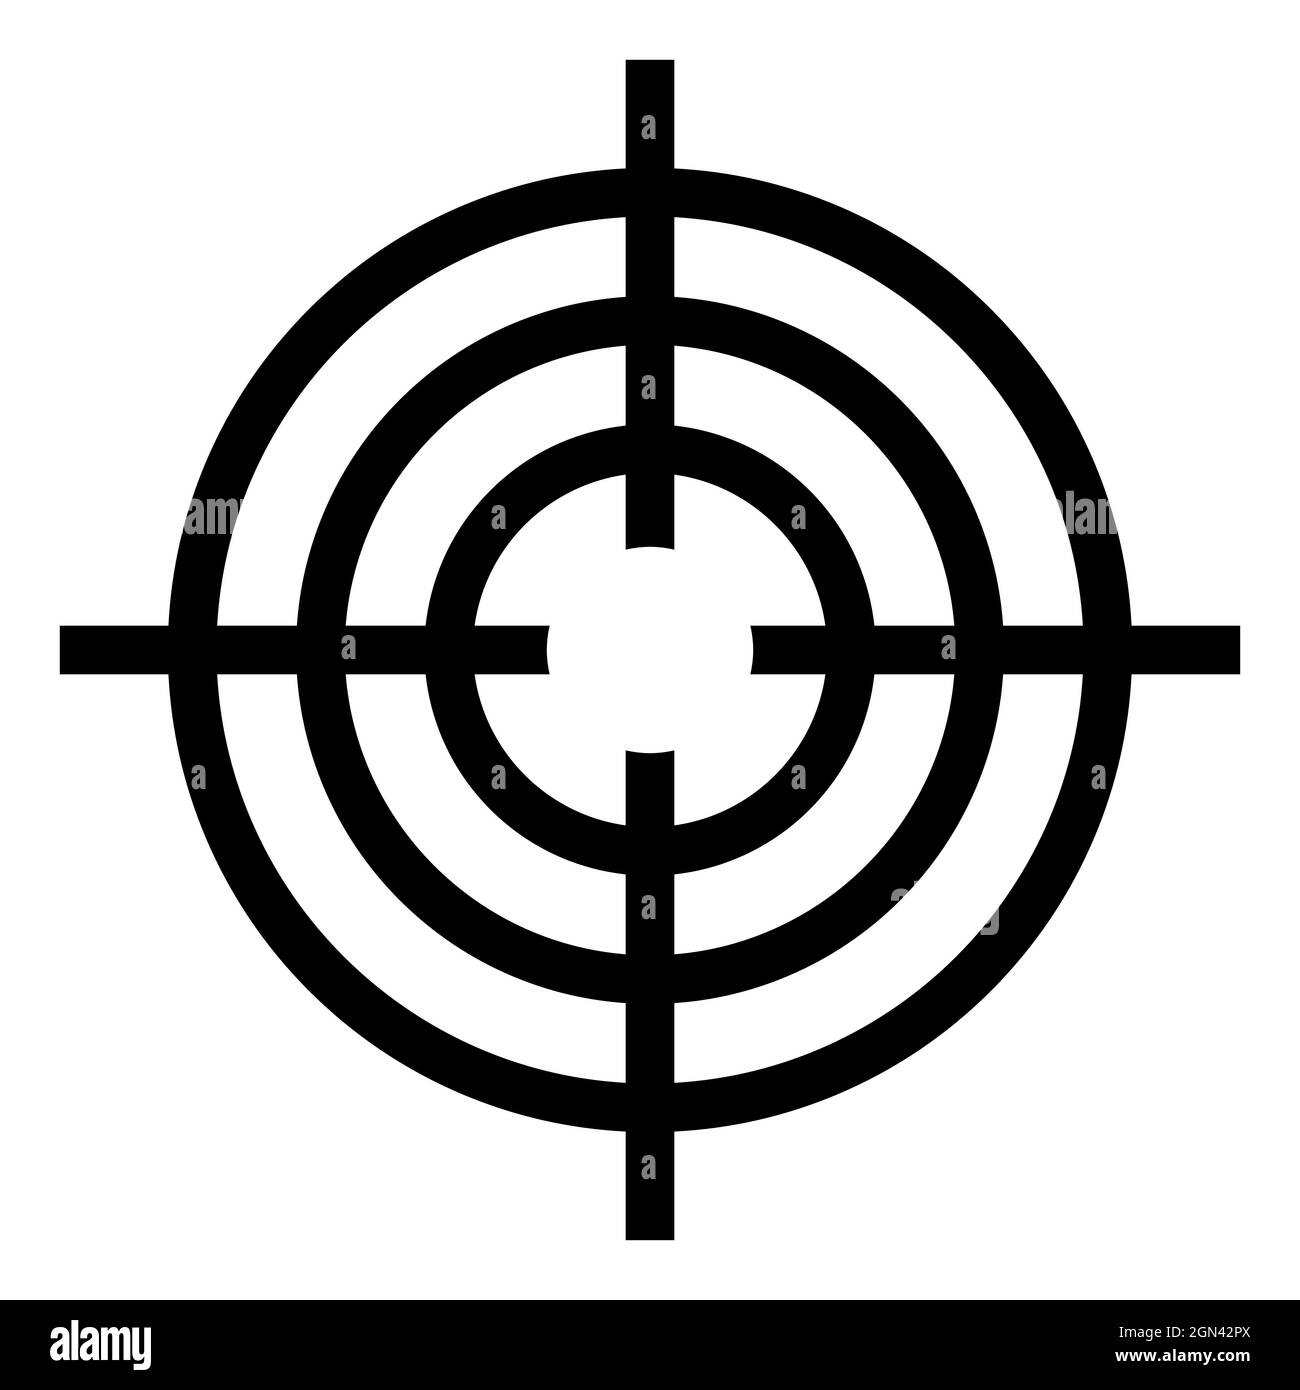 Icon-Sicht für präzise Aufnahmen, Fadenkreuz mit runden Ringen Stock Vektor